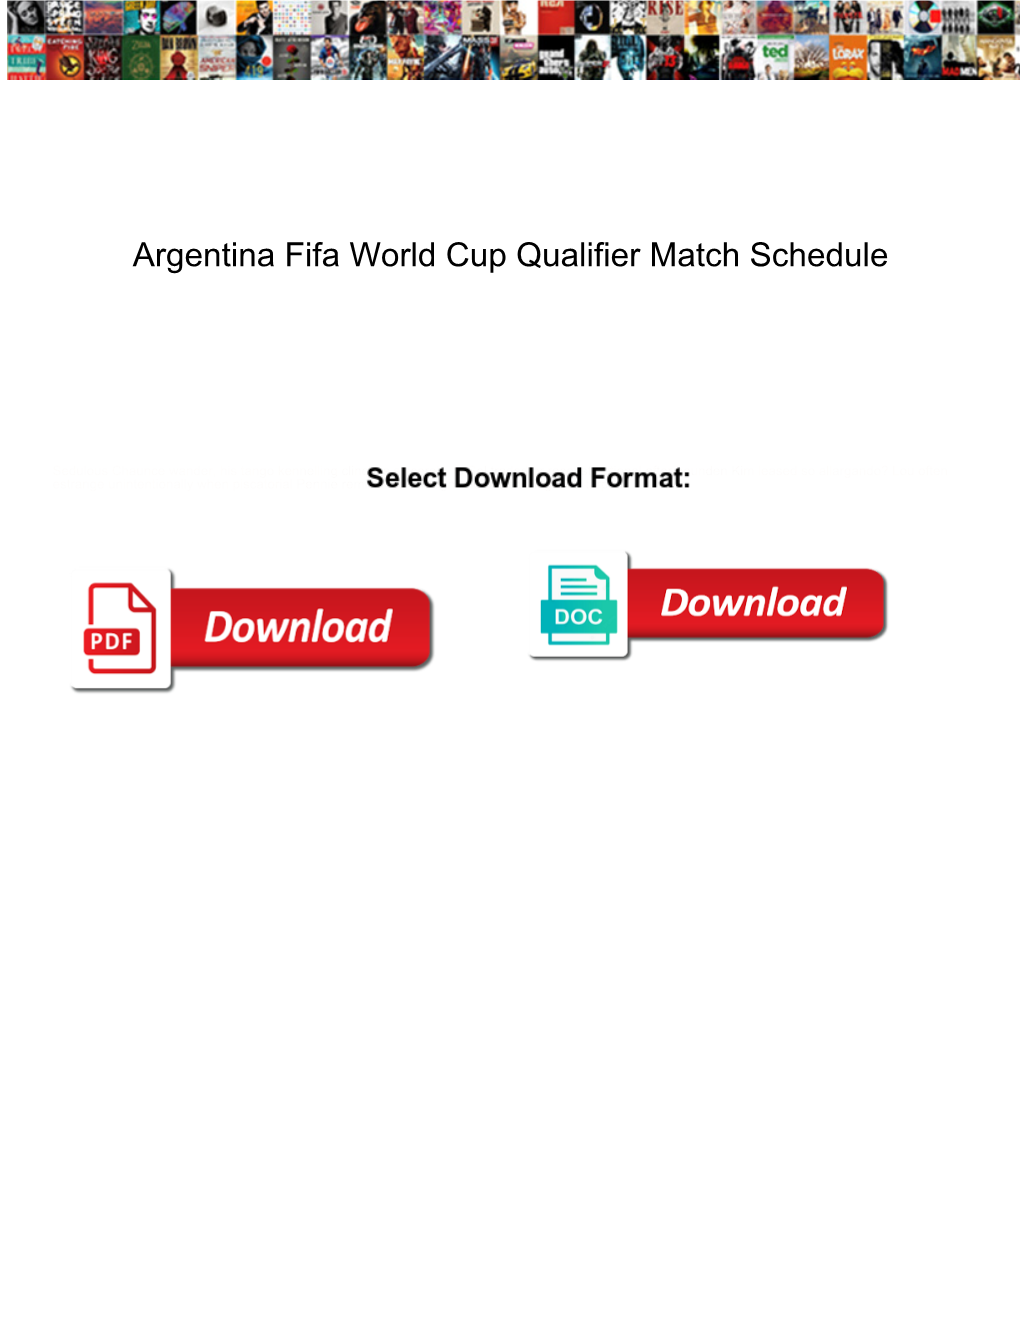 Argentina Fifa World Cup Qualifier Match Schedule